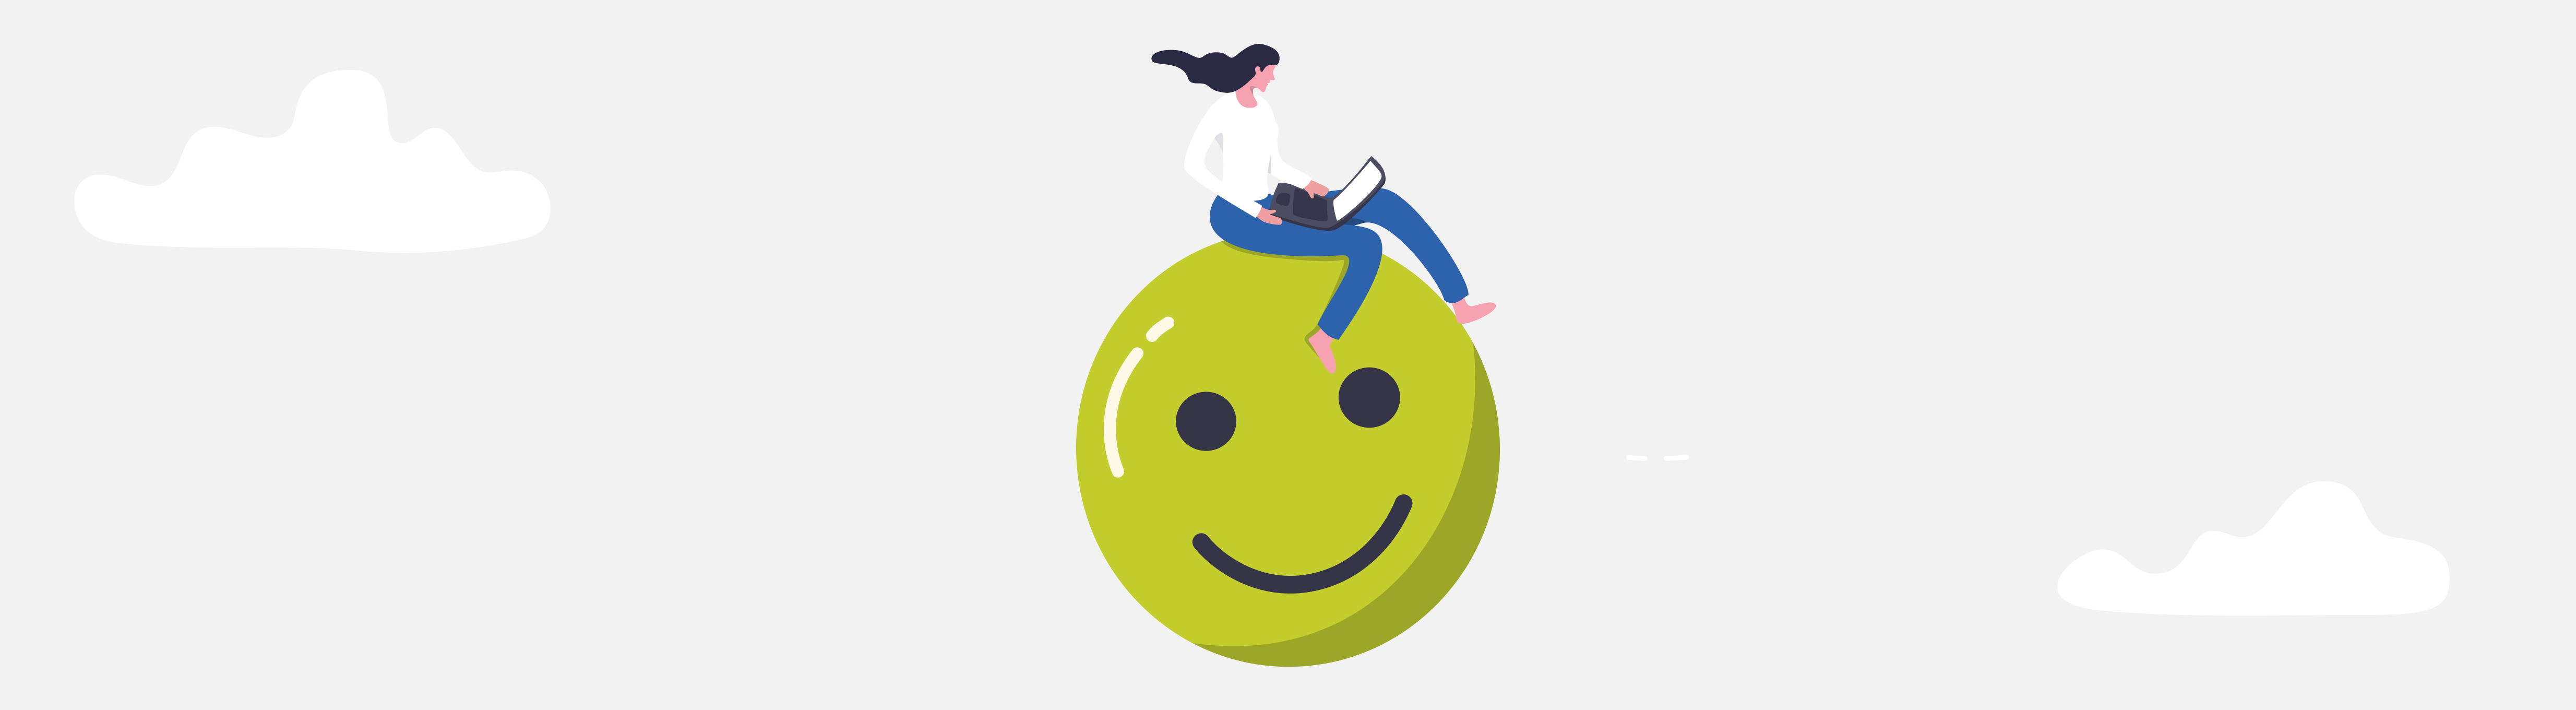 Ein Header-Bild für die Artikelreihe "Hybrides Arbeiten mit Google Workspace". Zu sehen ist eine gezeichnete Frau, die einen Laptop auf dem Schoß hat und auf einem großen, grünen, lächelnden Smiley sitzt.